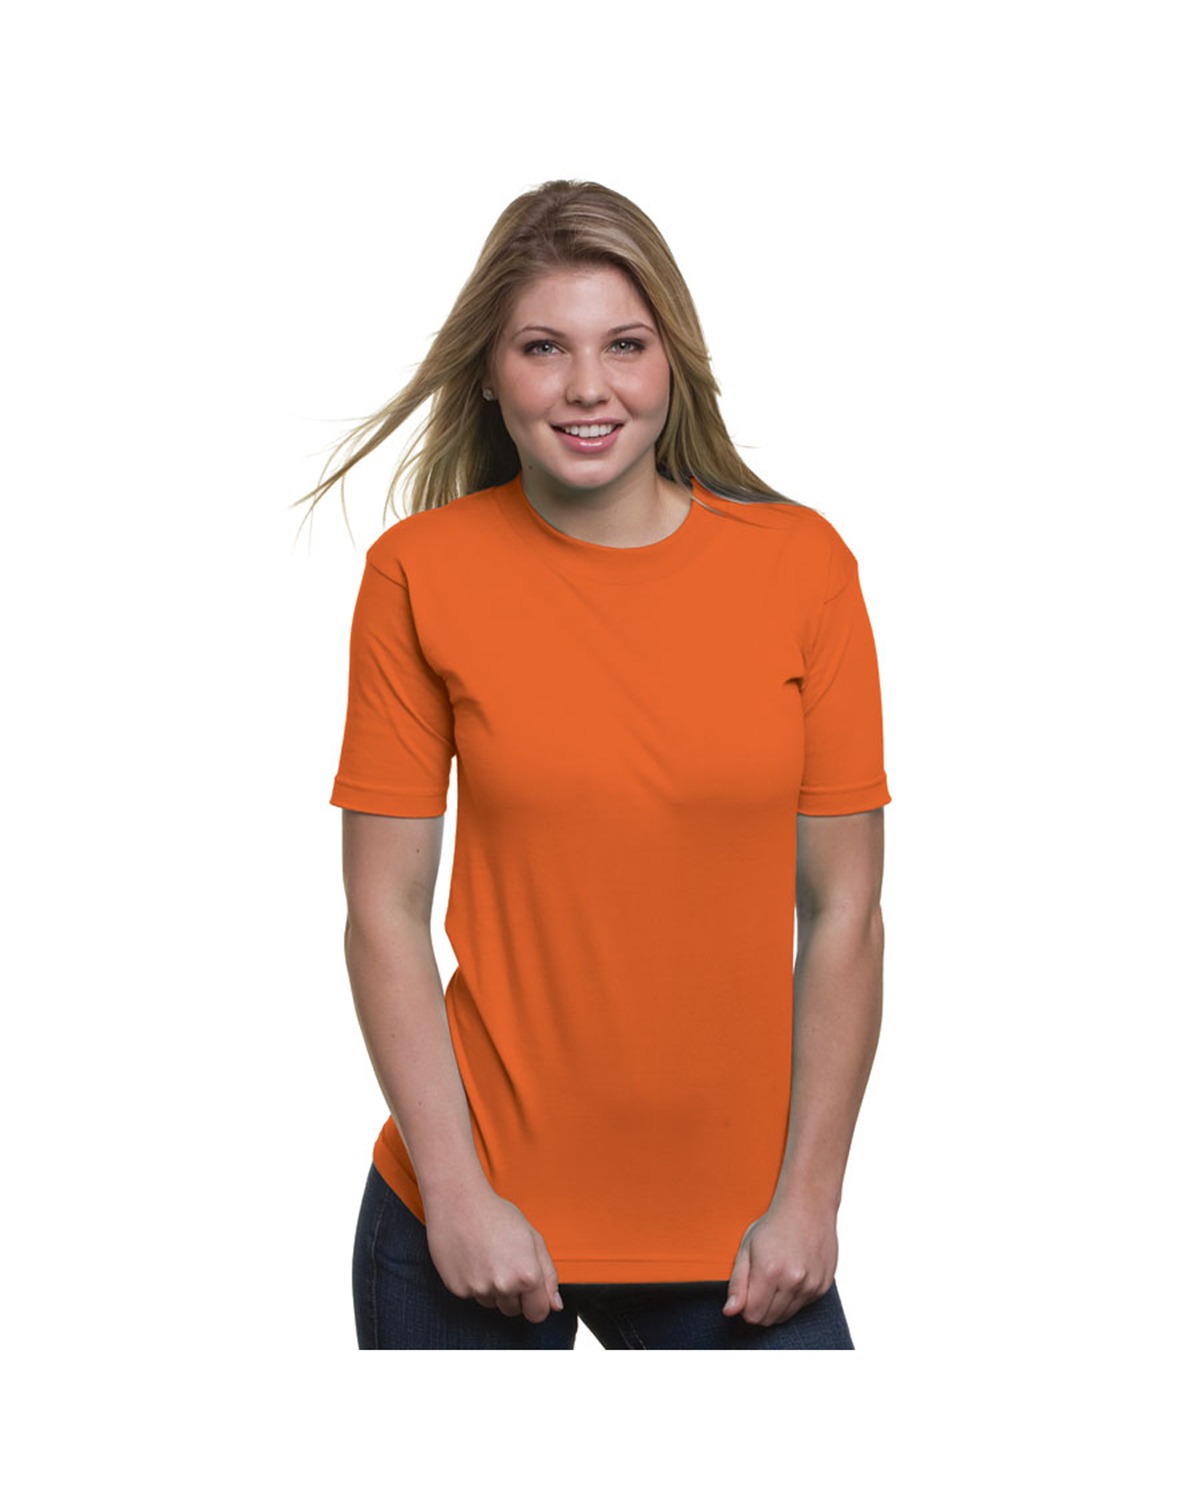 Bayside BA2905 - 6.1 oz. Union Made Basic T-Shirt